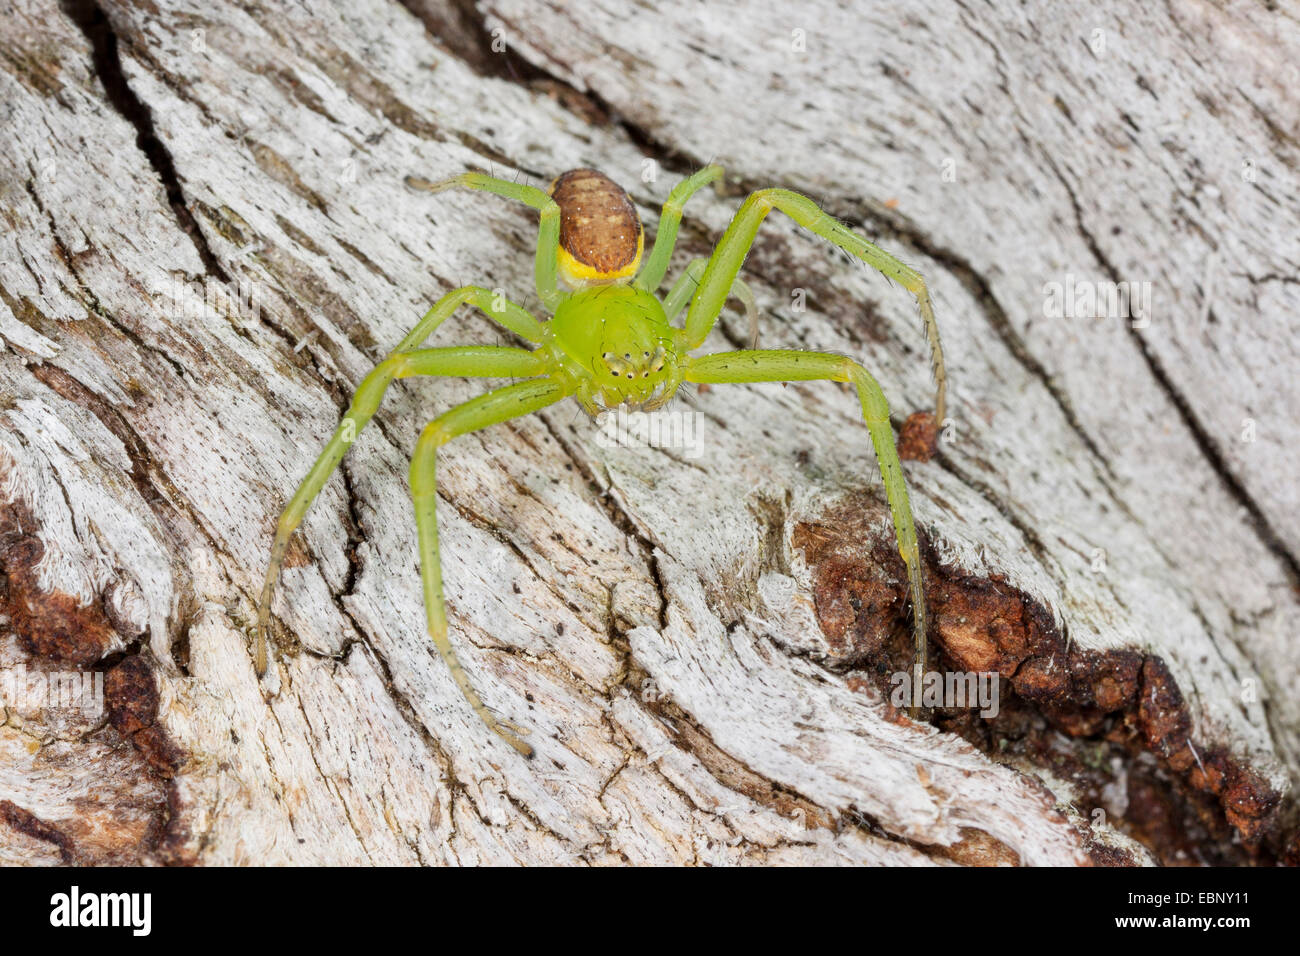 Araignée crabe vert, crabe araignée (Diaea dorsata), sur bois, Allemagne Banque D'Images